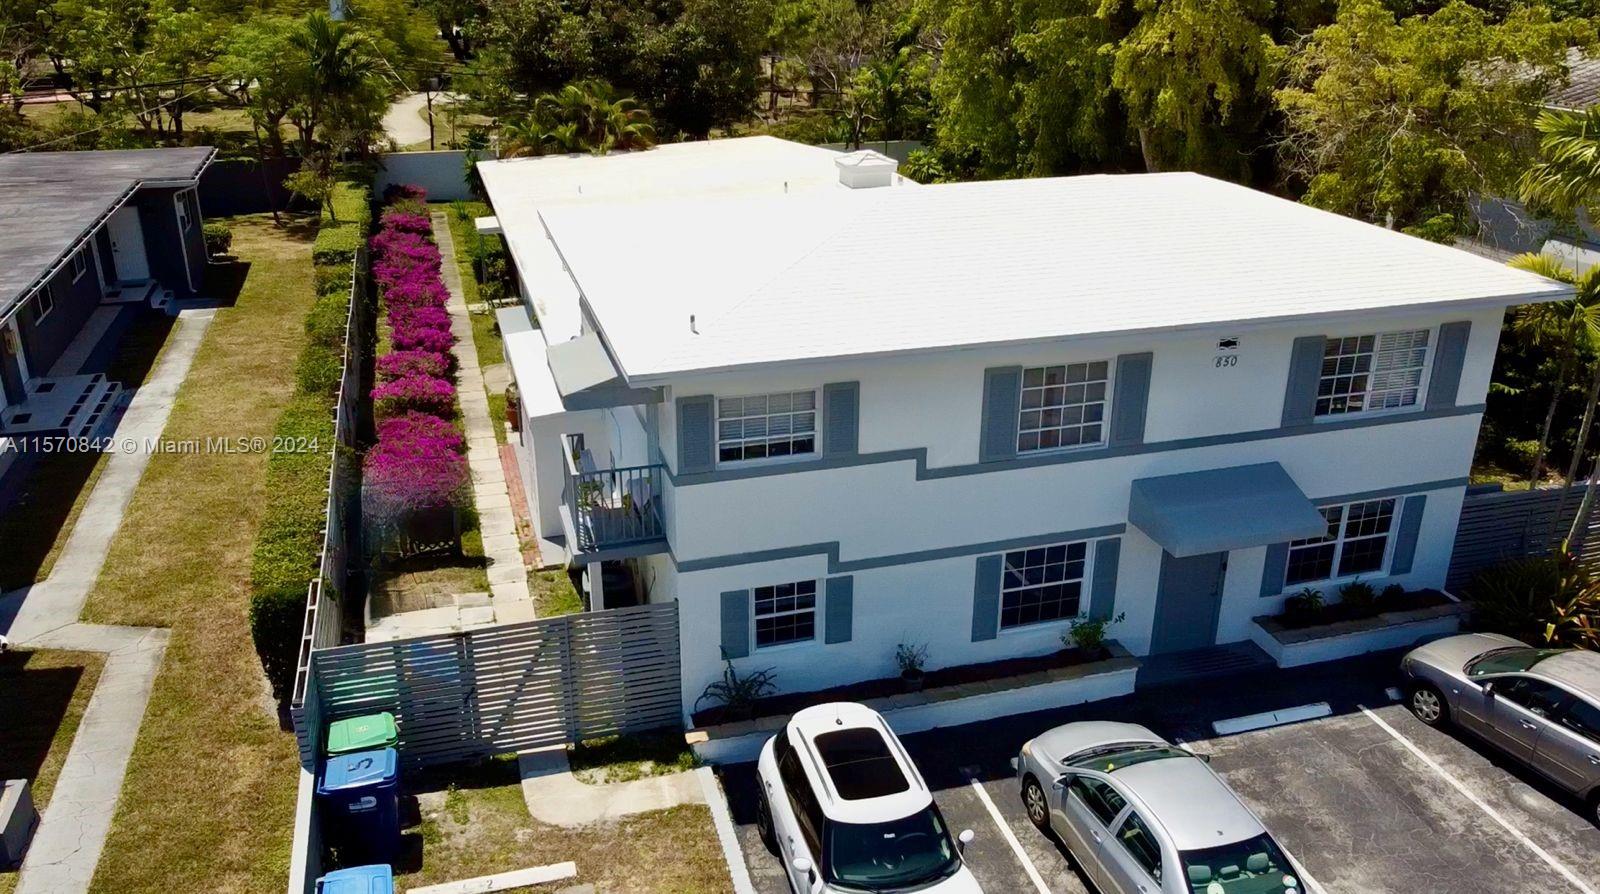 Rental Property at 850 Ne 90th St, Miami, Broward County, Florida -  - $2,275,000 MO.